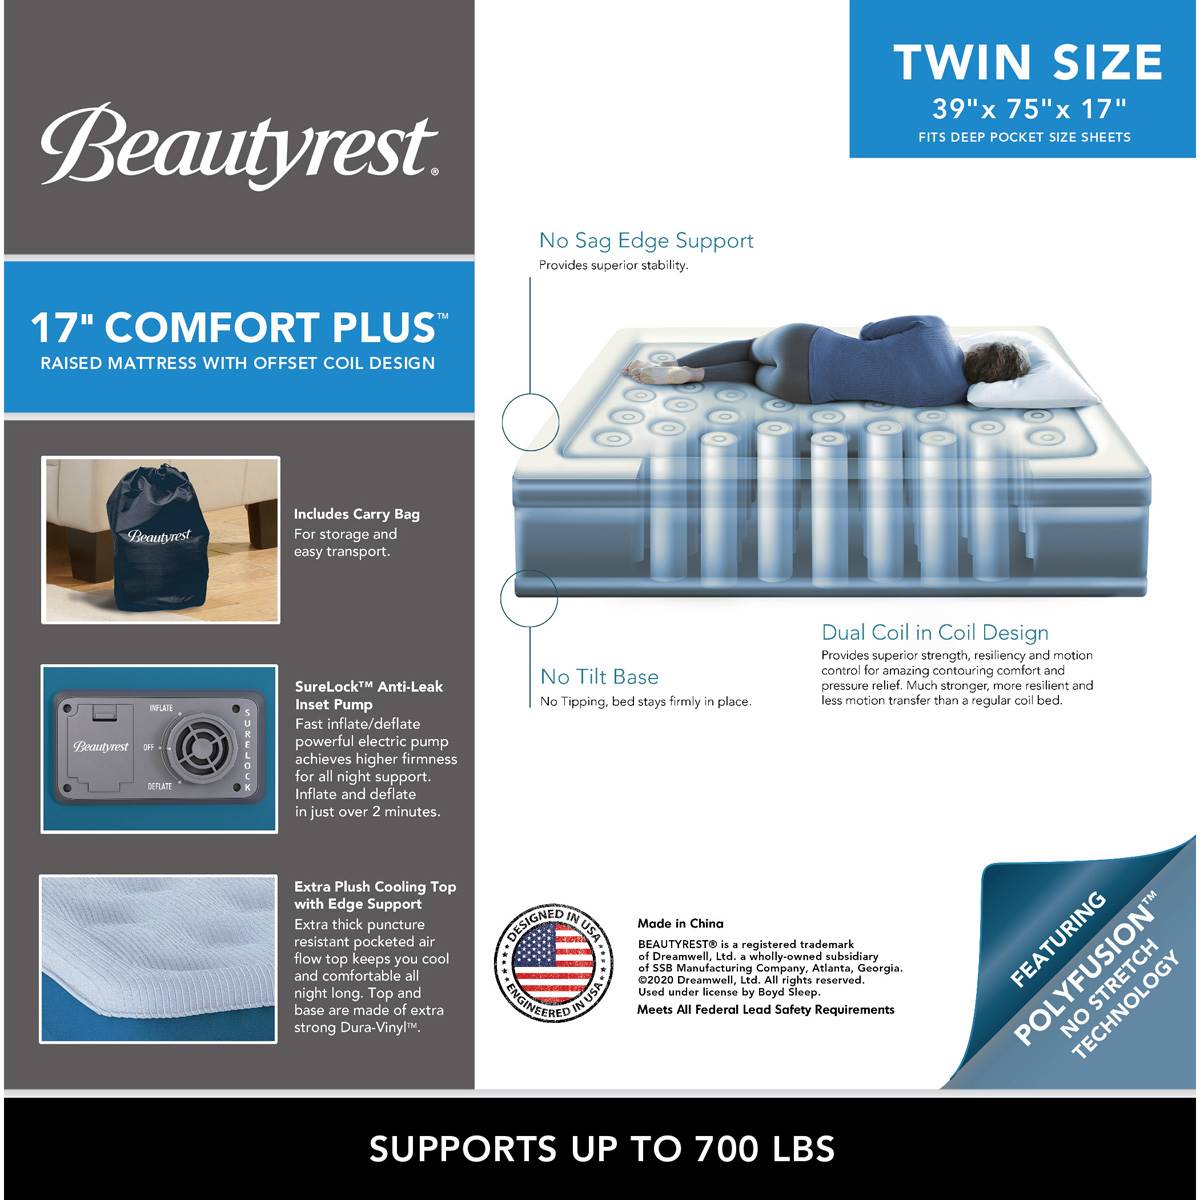 Beautyrest(R) Comfort Plus Air Bed Twin Mattress